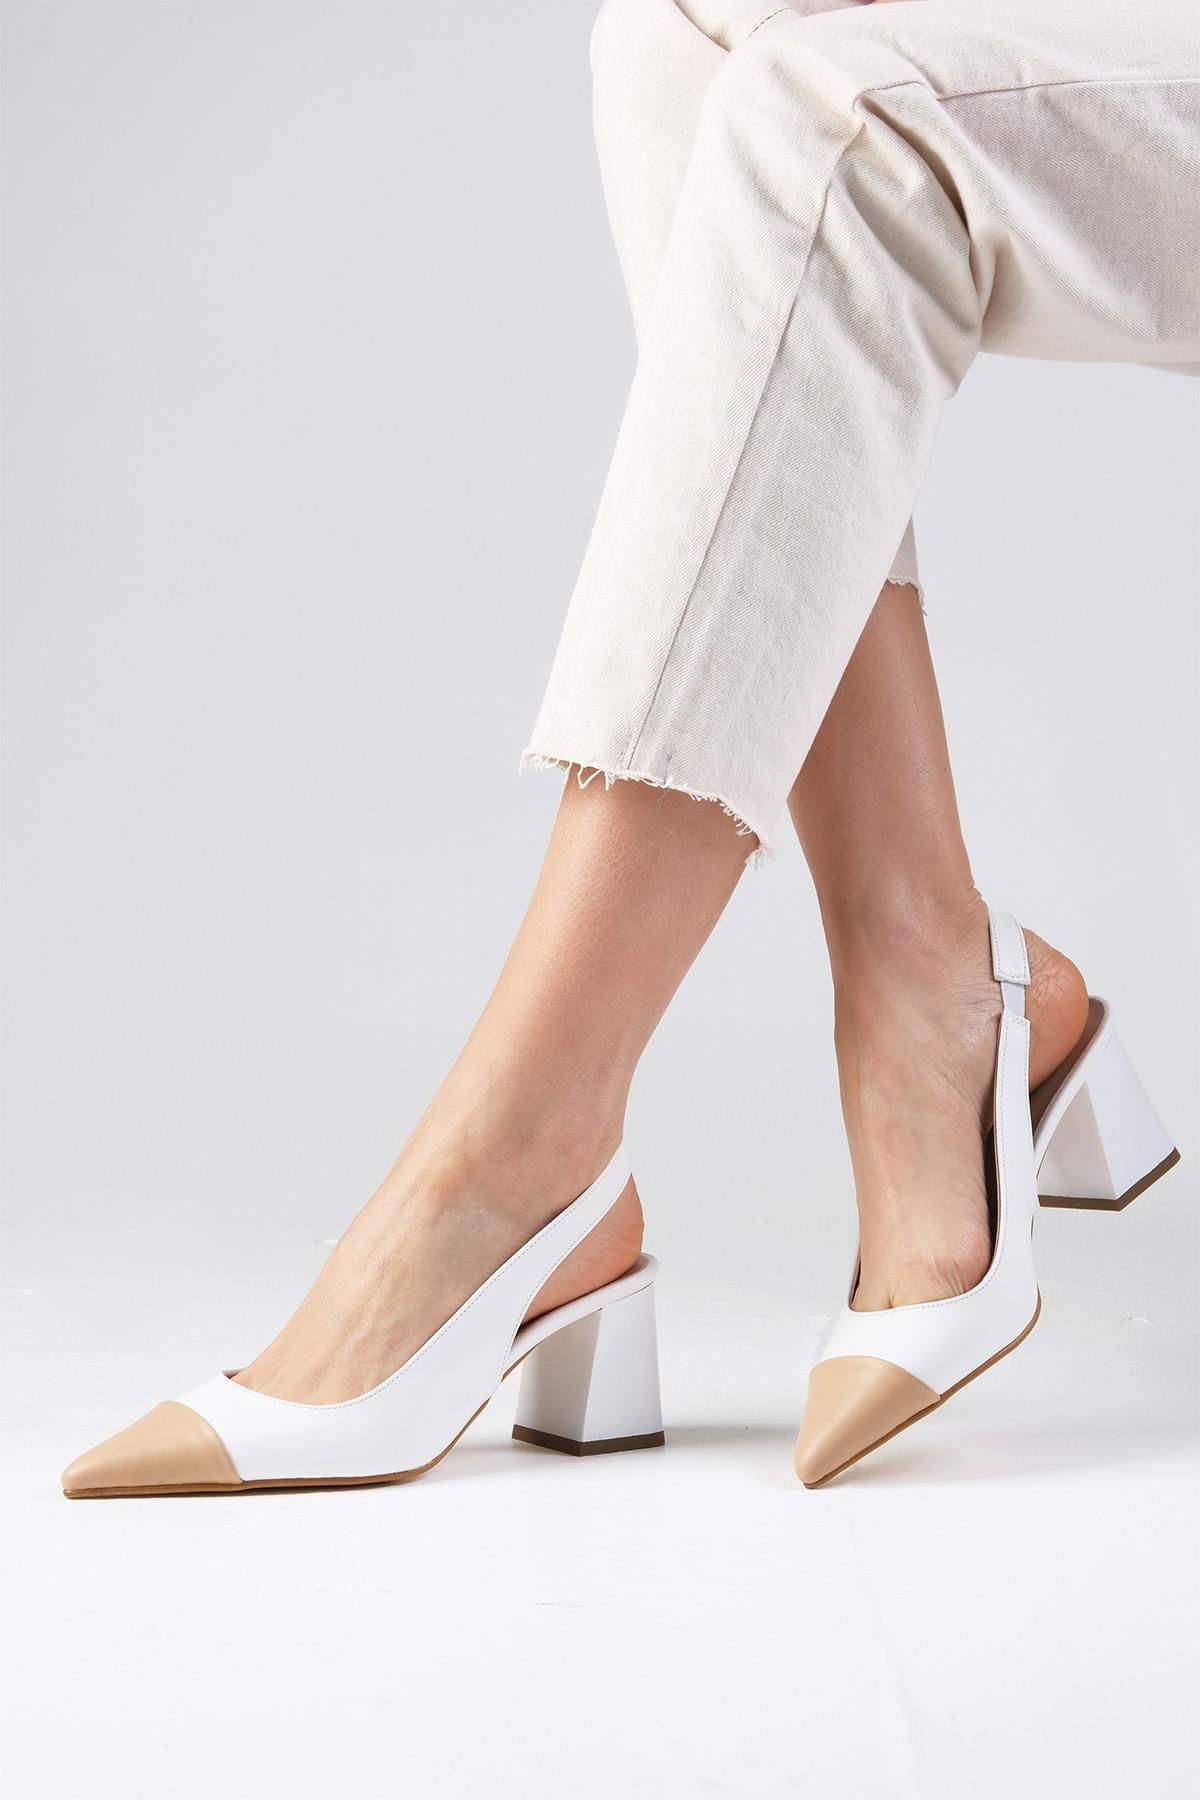 Mio Gusto Natalie Beyaz Renk Sivri Burunlu Arkası Açık Kalın Topuklu Ayakkabı